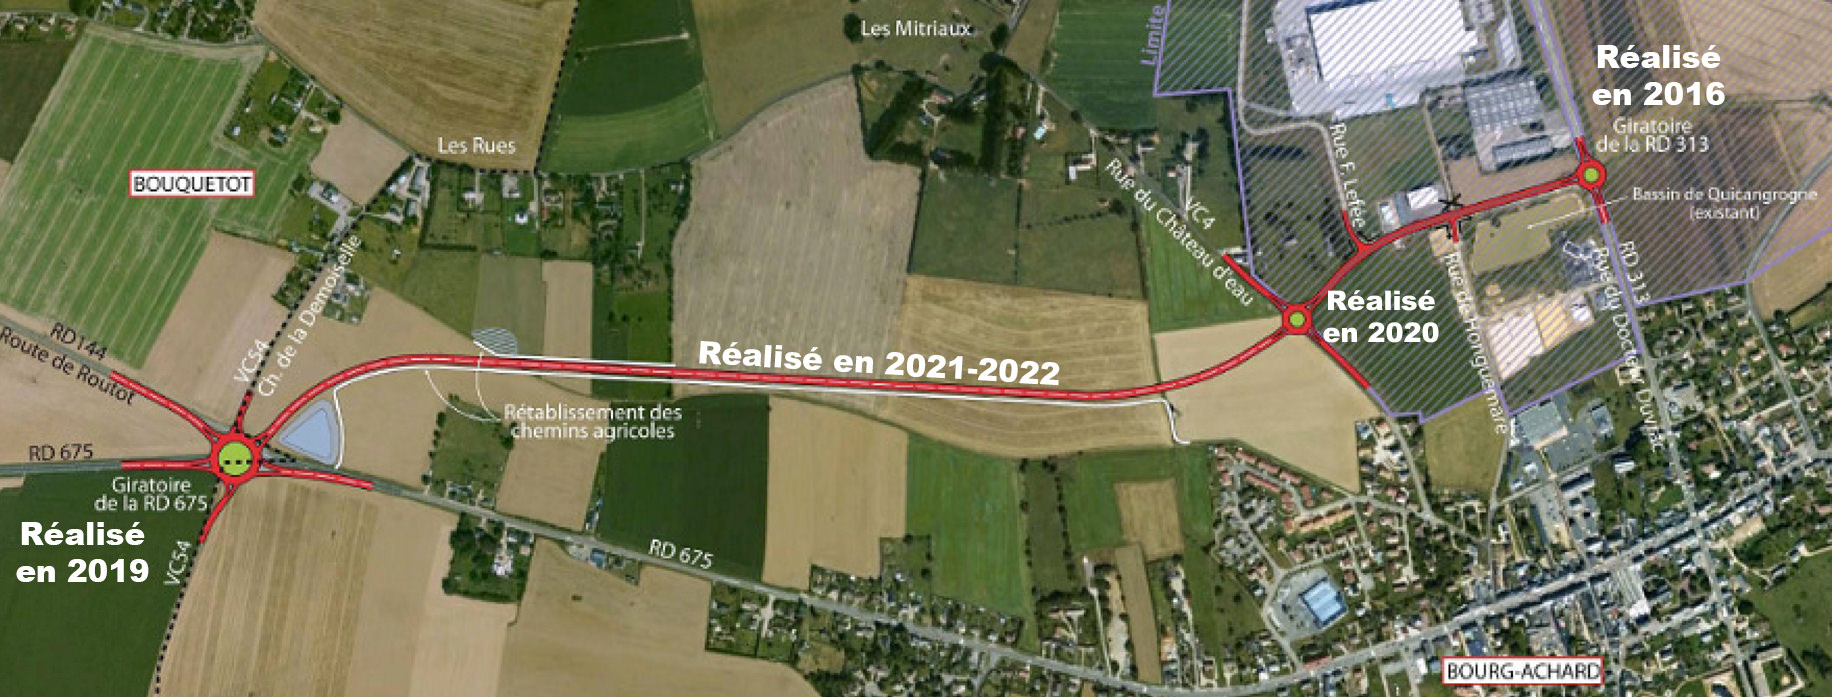 Plan du projet de la déviation de Bourg-Achard dans l'Eure